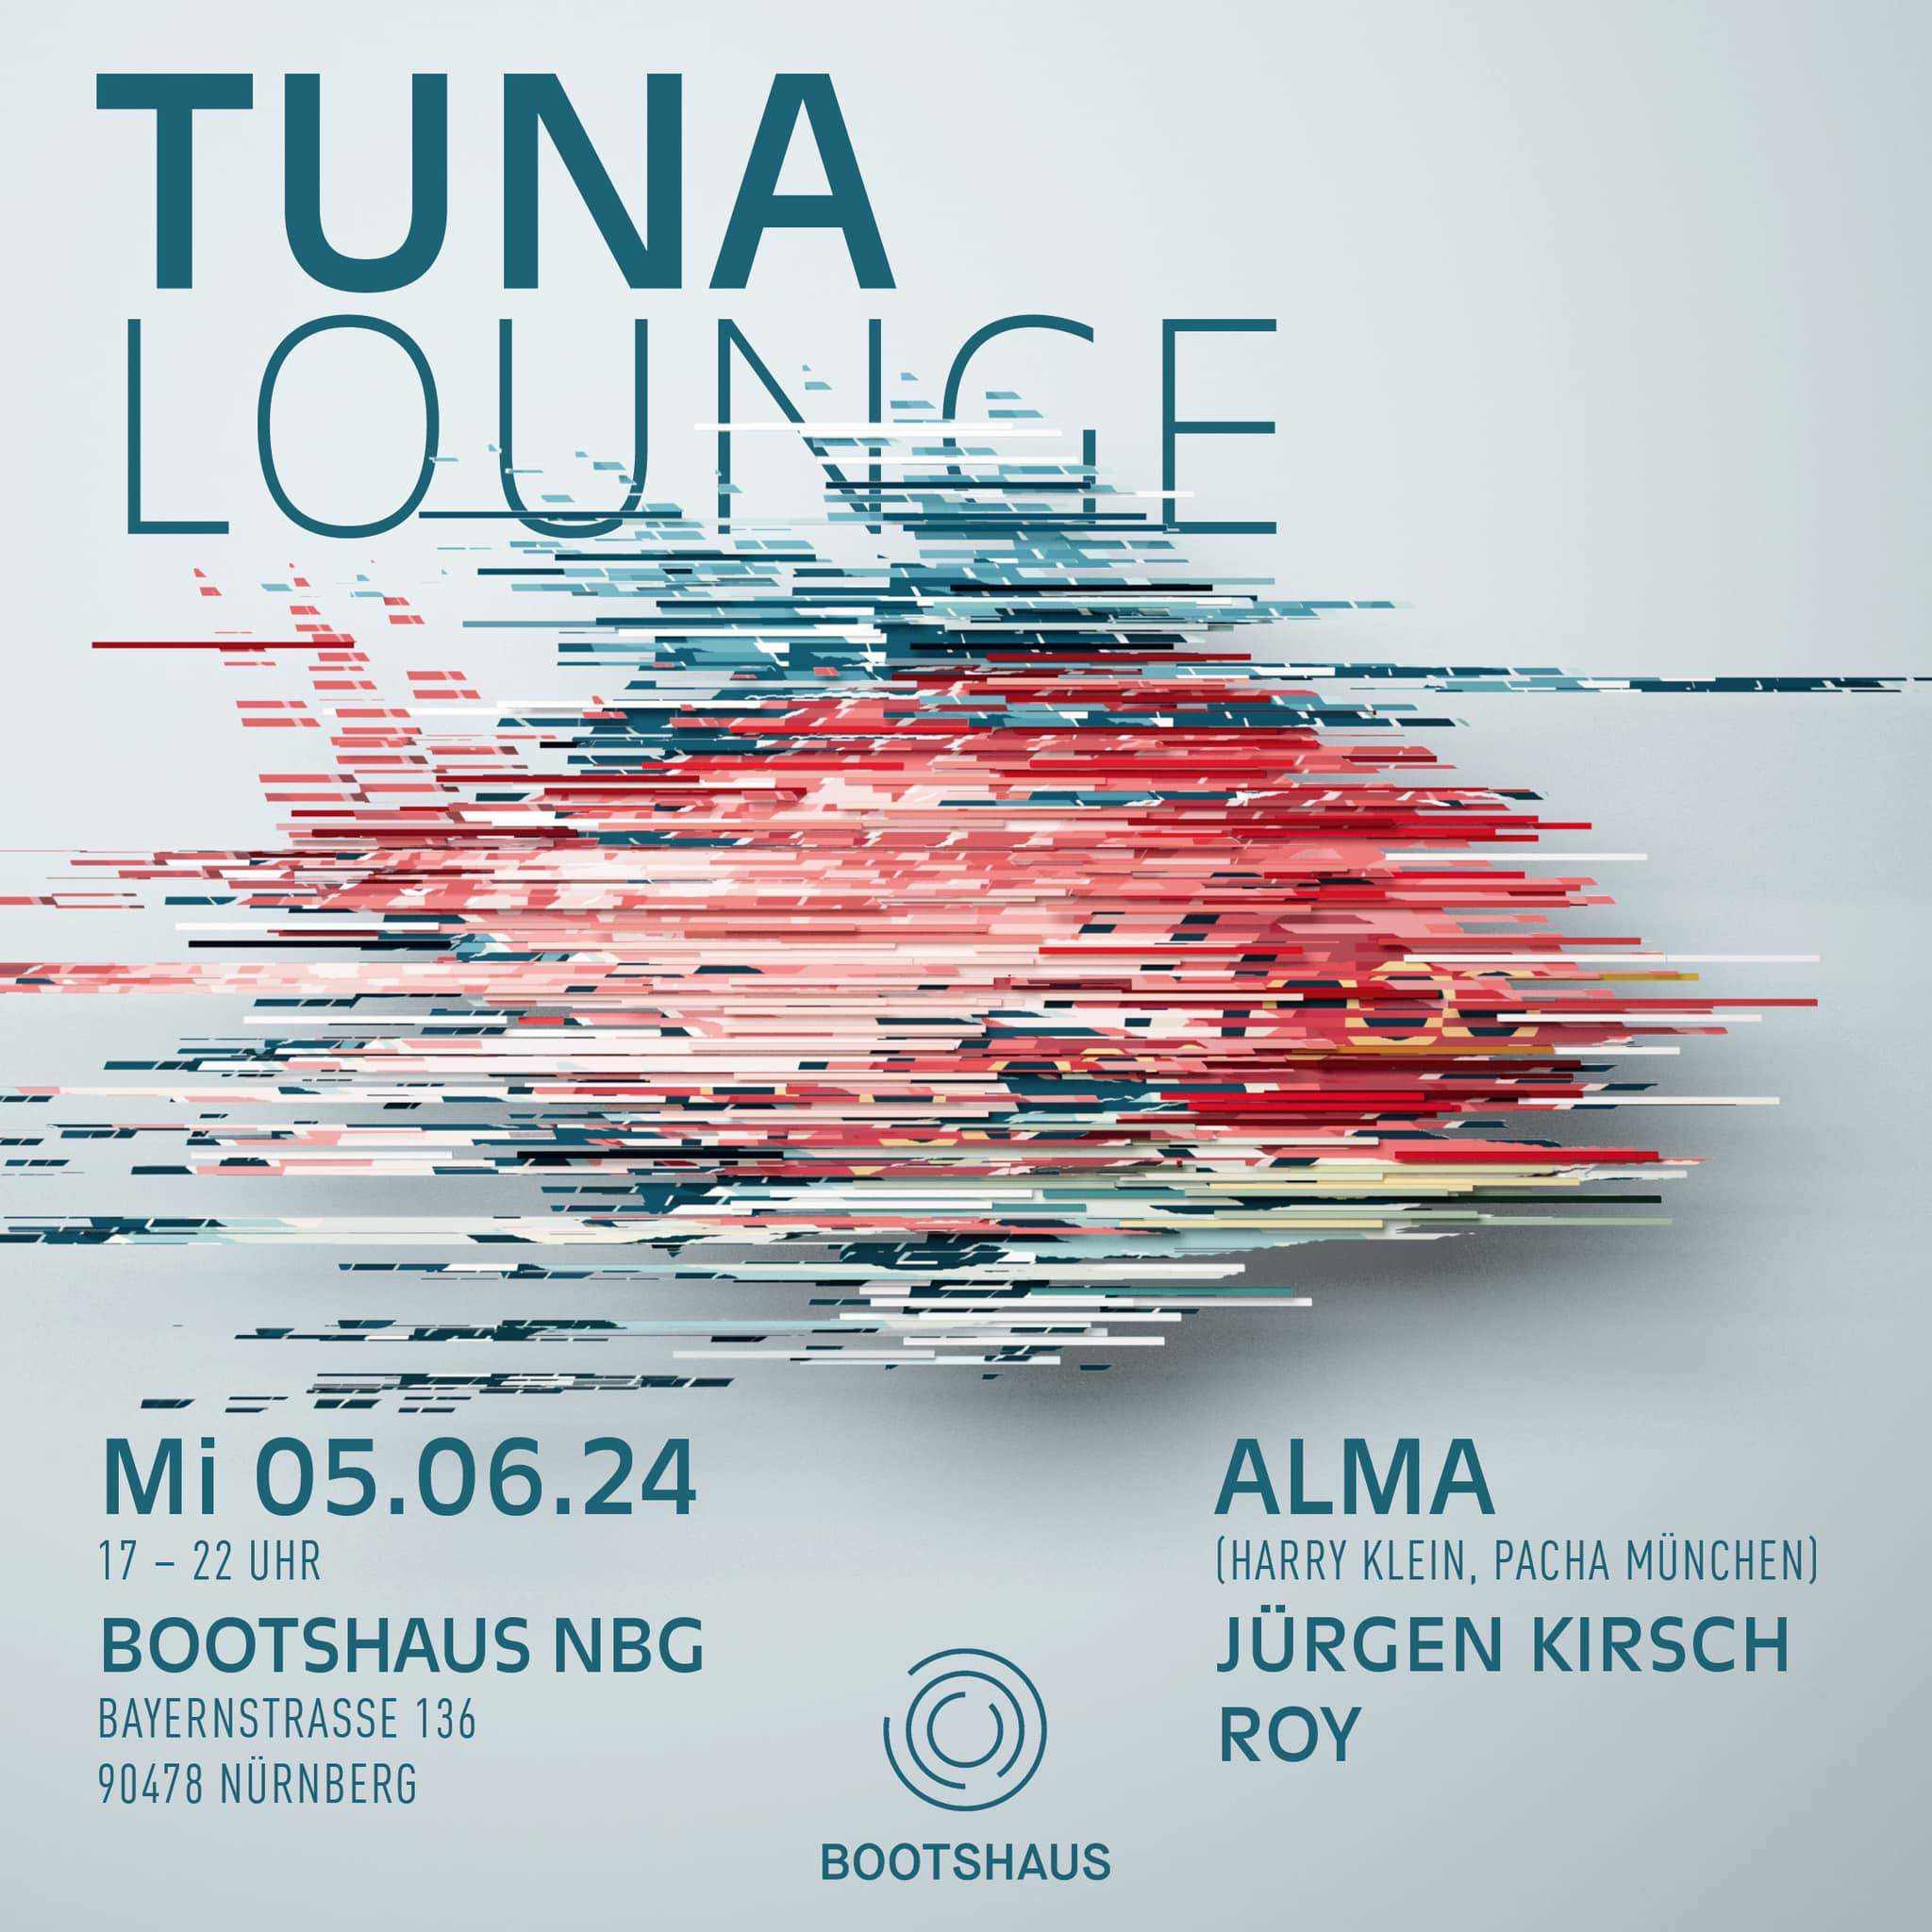 Tuna Lounge with ALMA, Jürgen Kirsch, Roy - フライヤー表